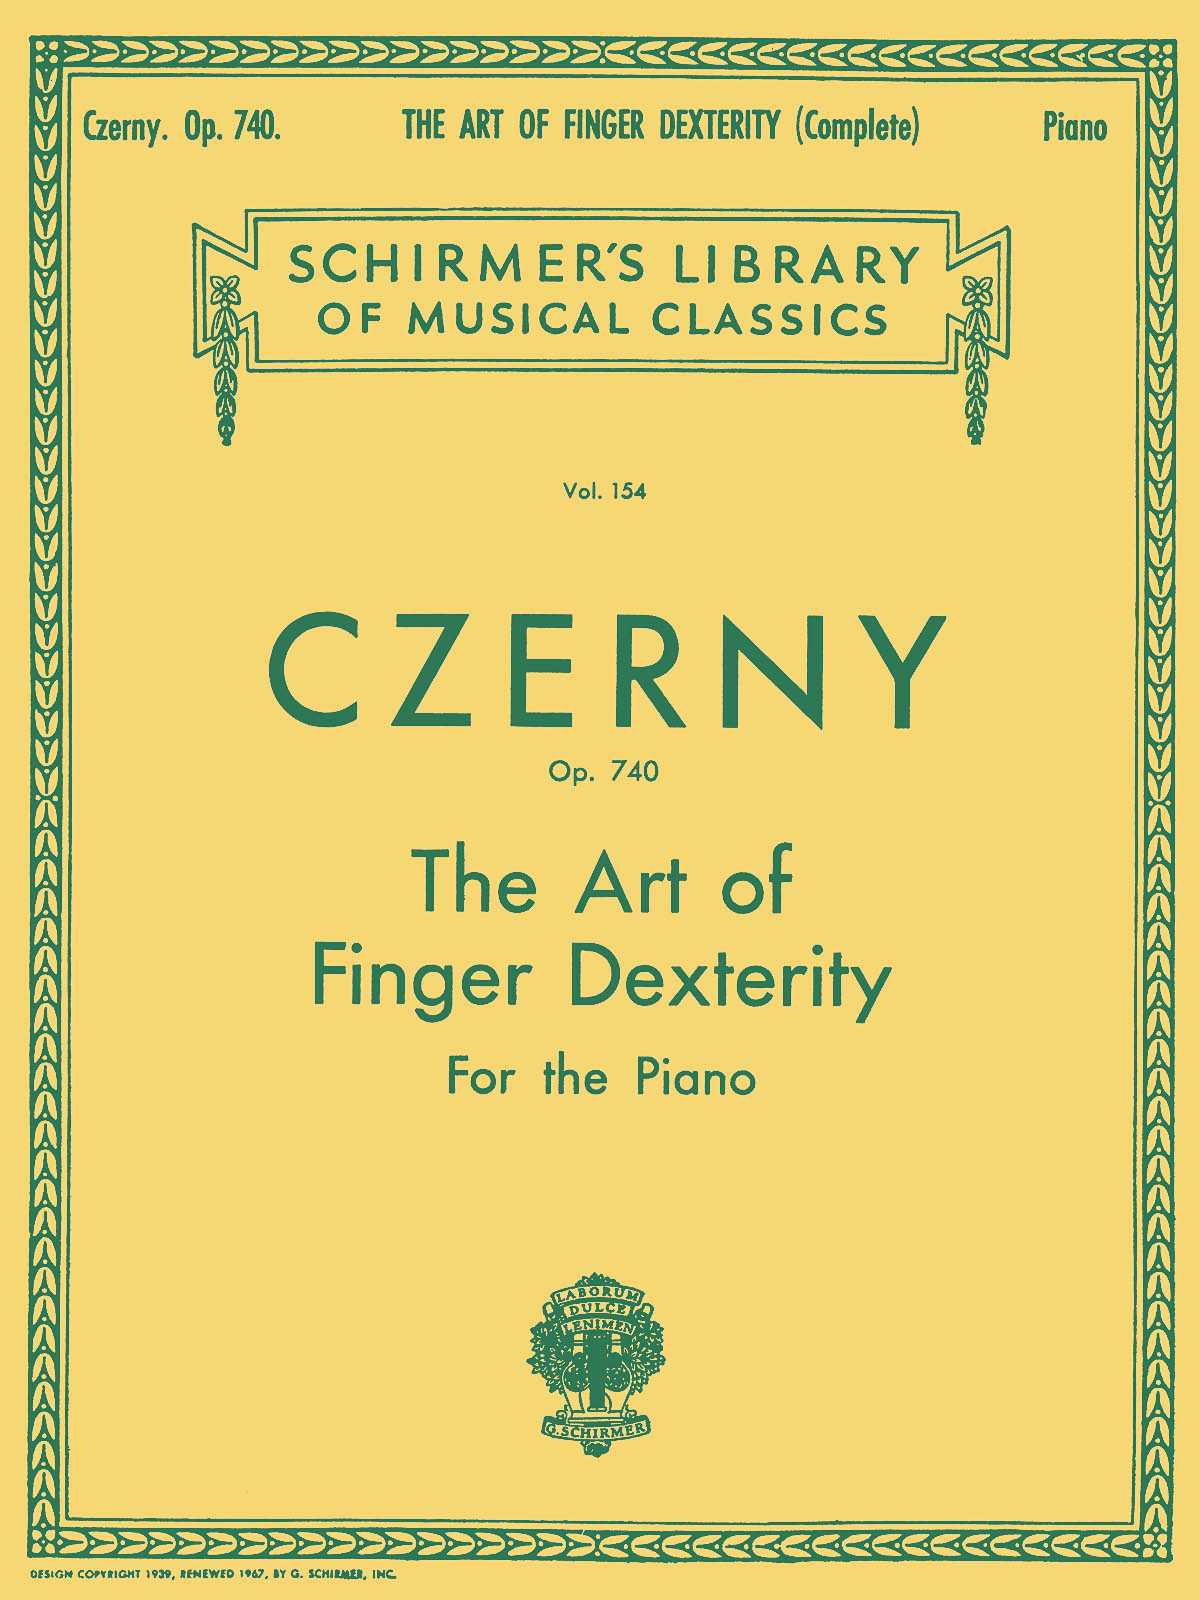 Art of Finger Dexterity, Op. 740 (Complete) Piano